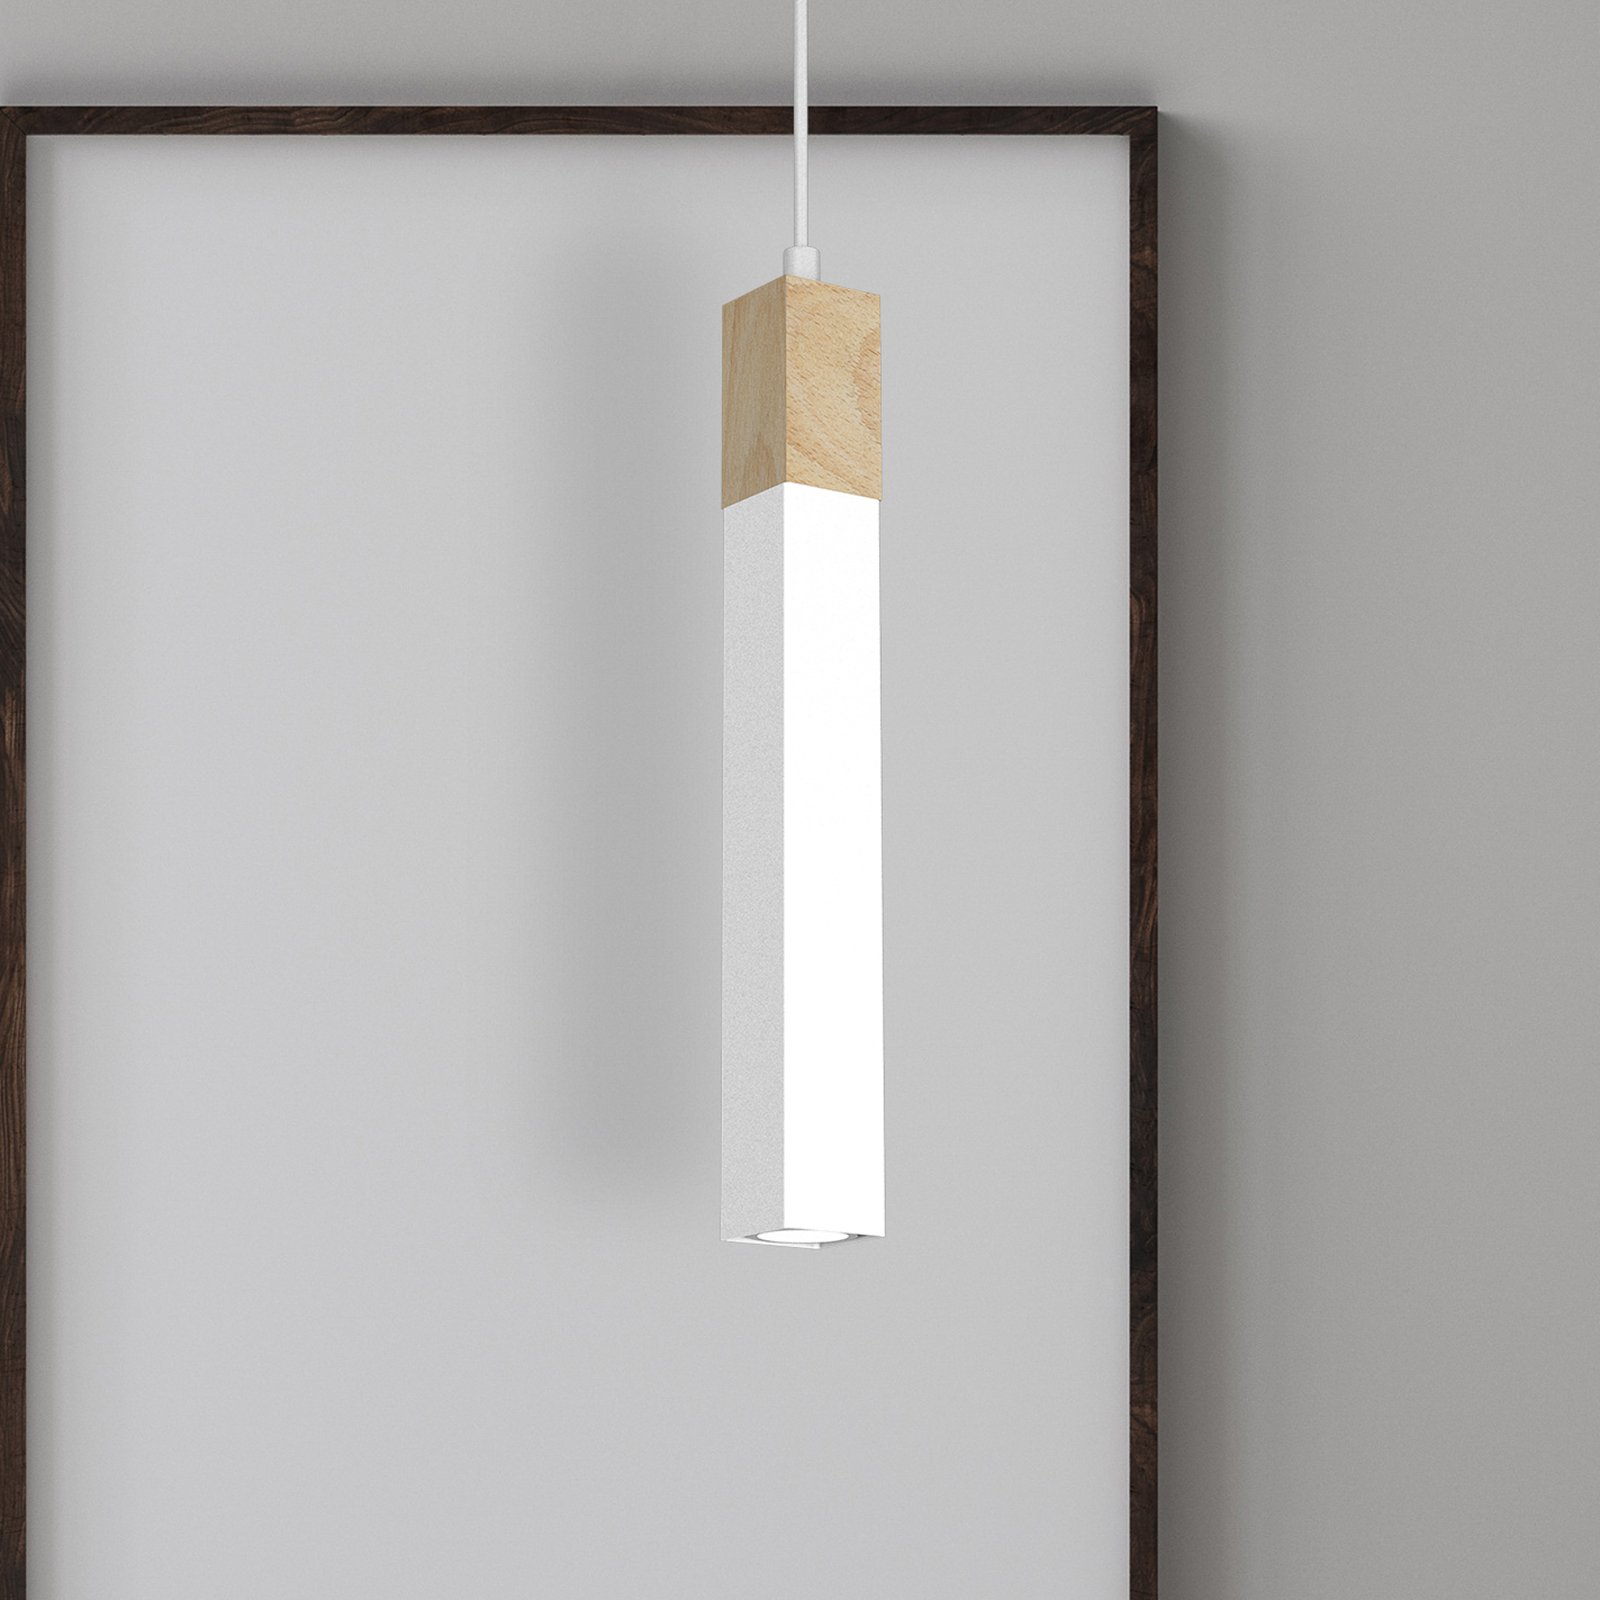 Stag hængelampe, 1 lyskilde, hvid/brun